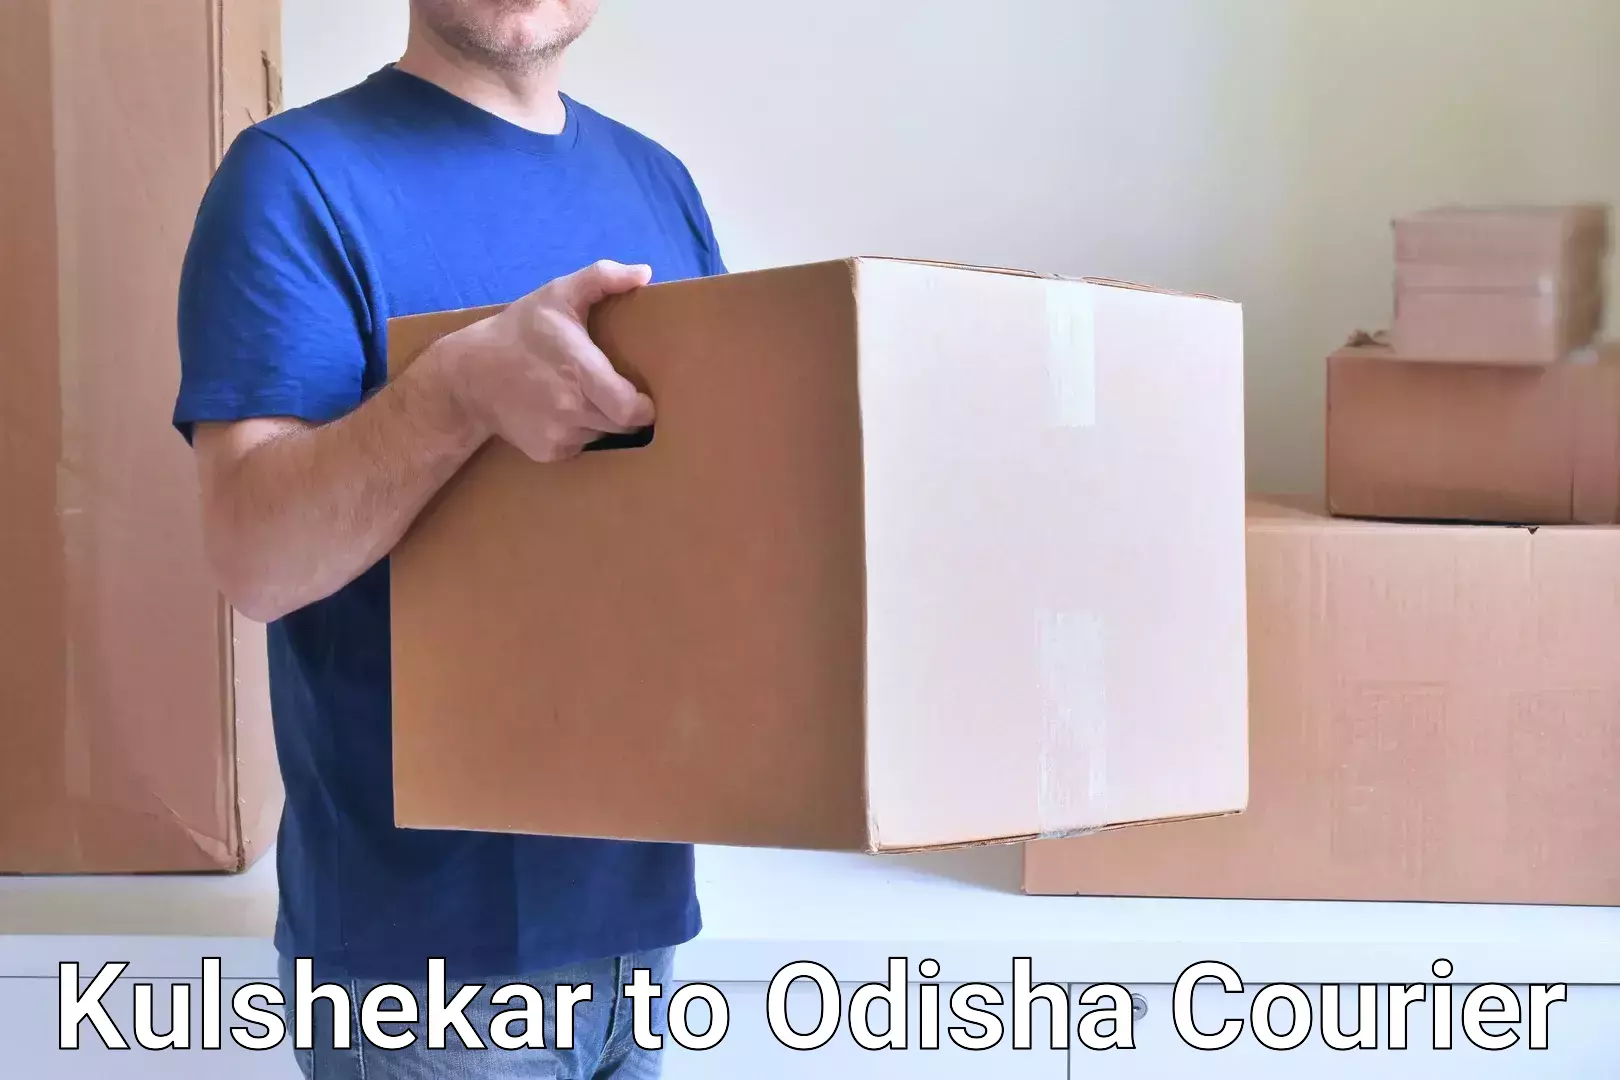 Efficient parcel service Kulshekar to Ganjam